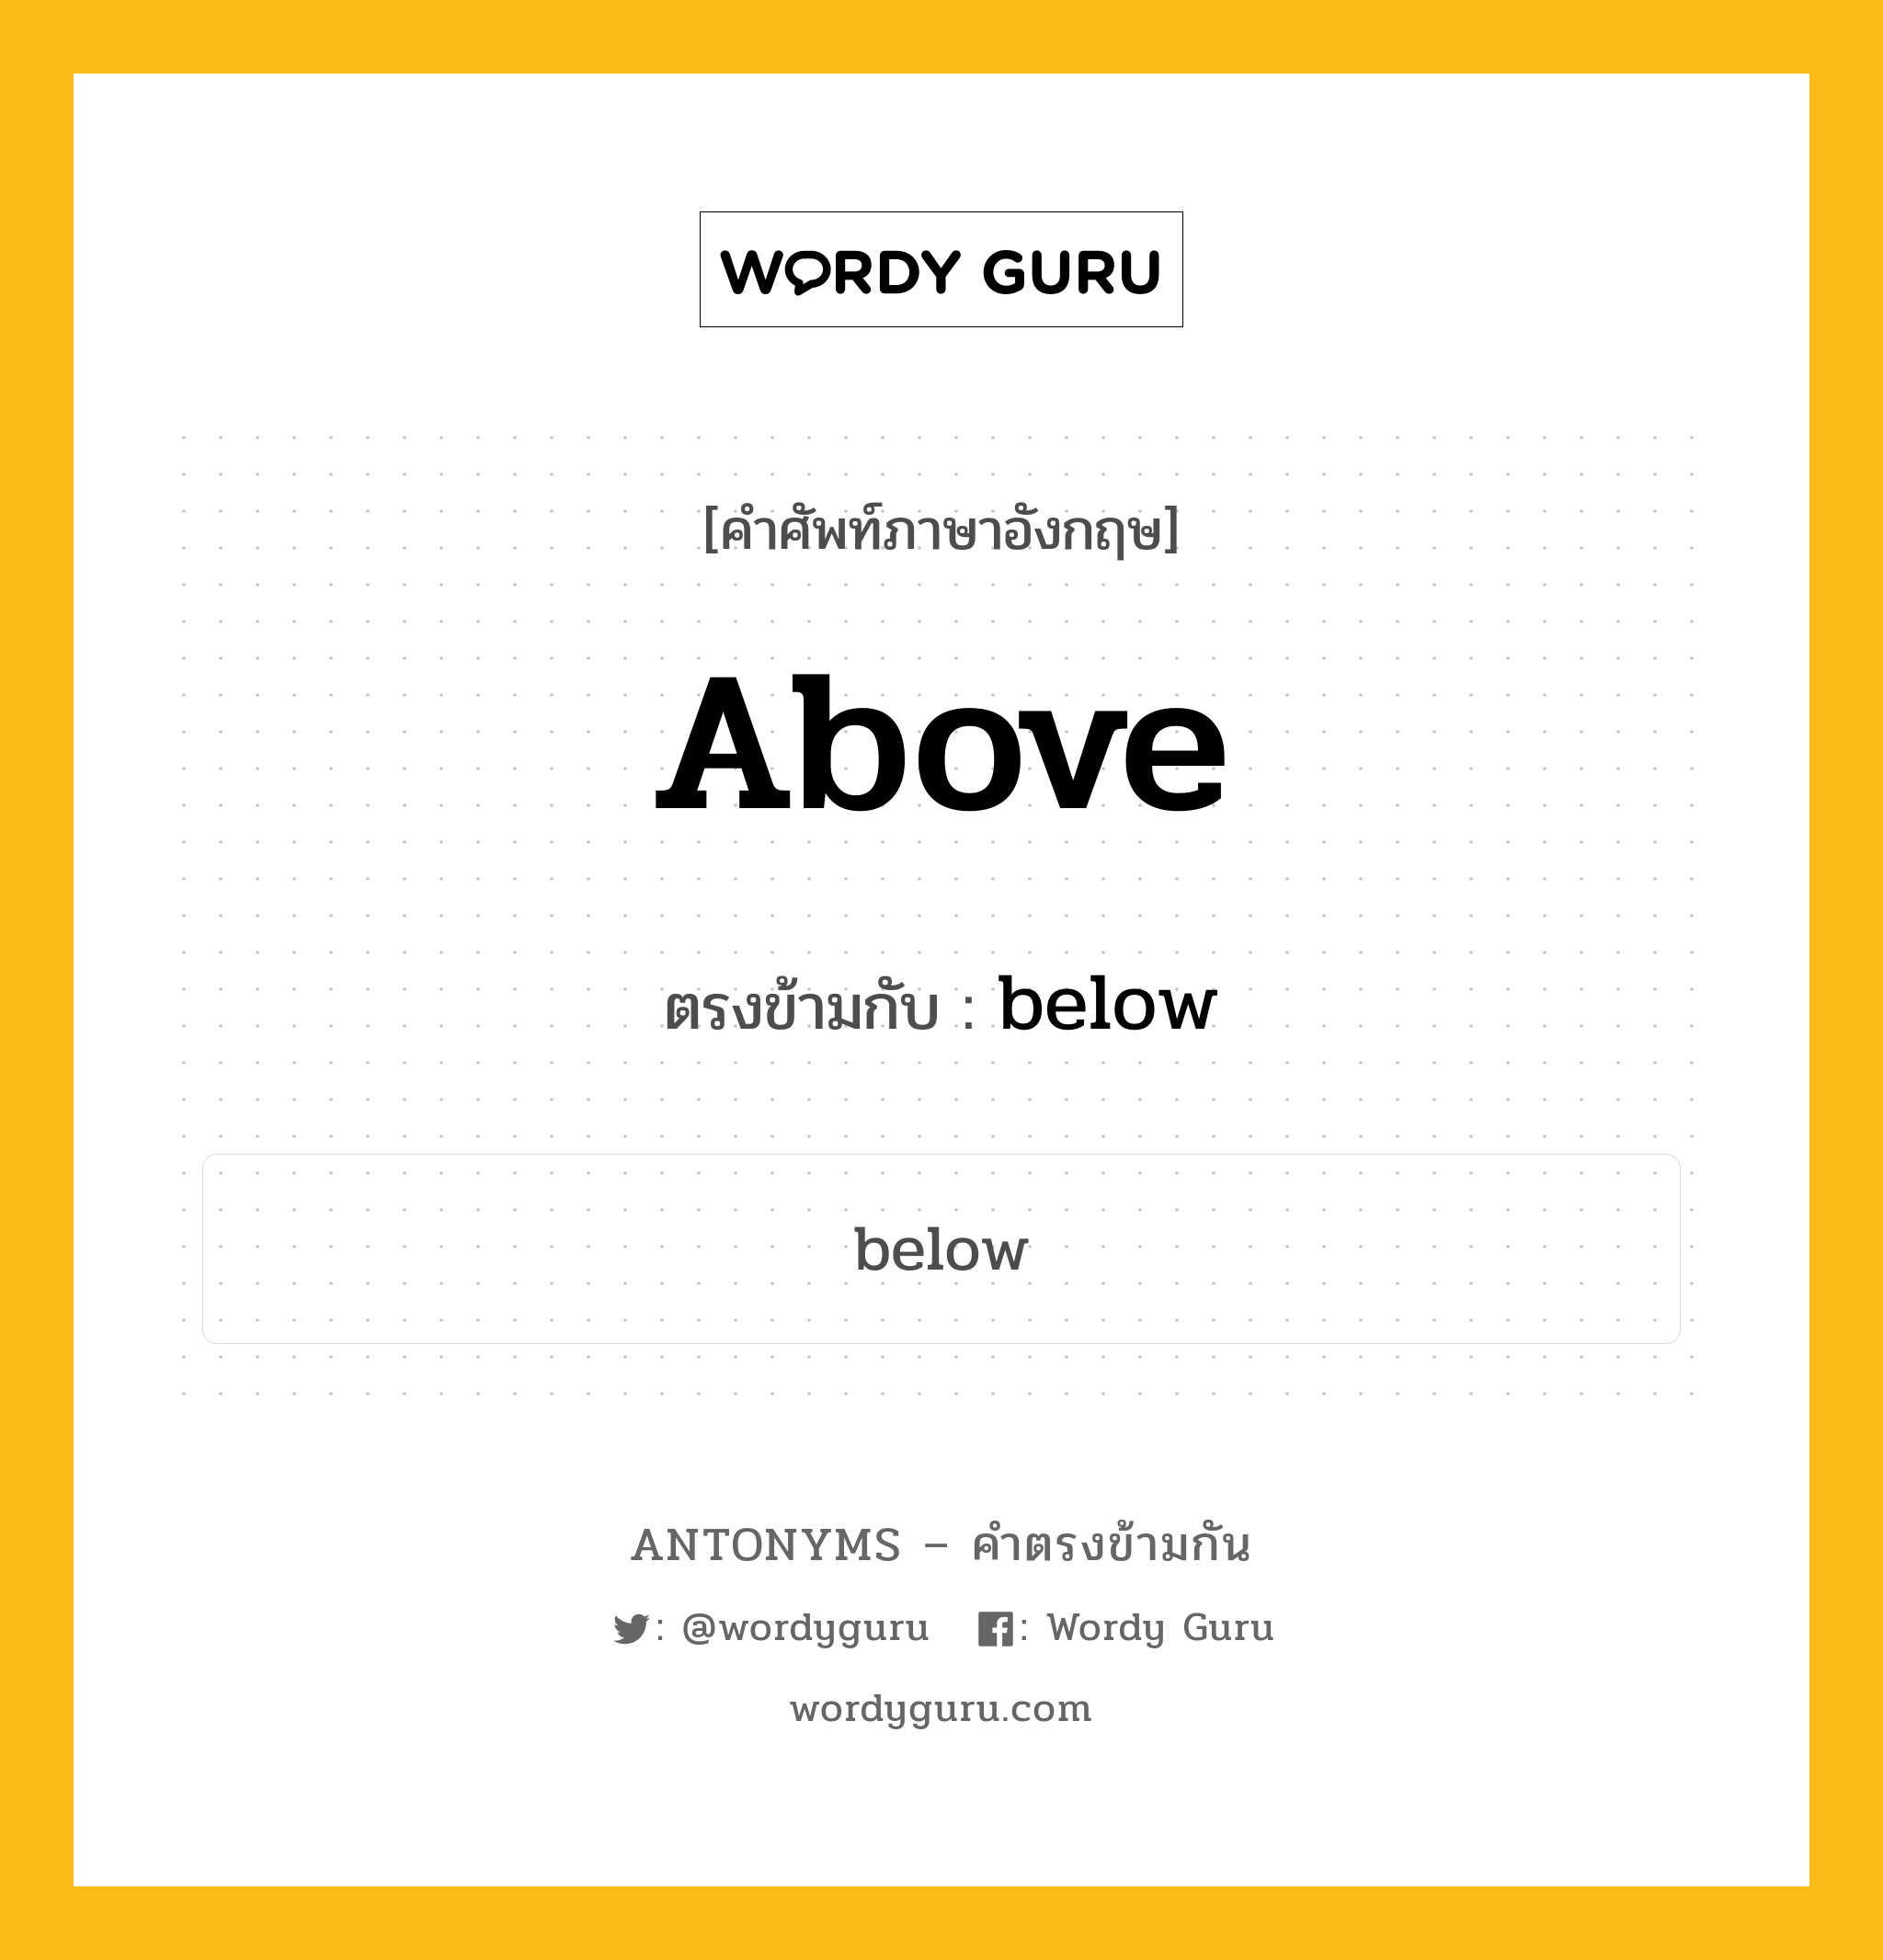 above เป็นคำตรงข้ามกับคำไหนบ้าง?, คำศัพท์ภาษาอังกฤษ above ตรงข้ามกับ below หมวด below